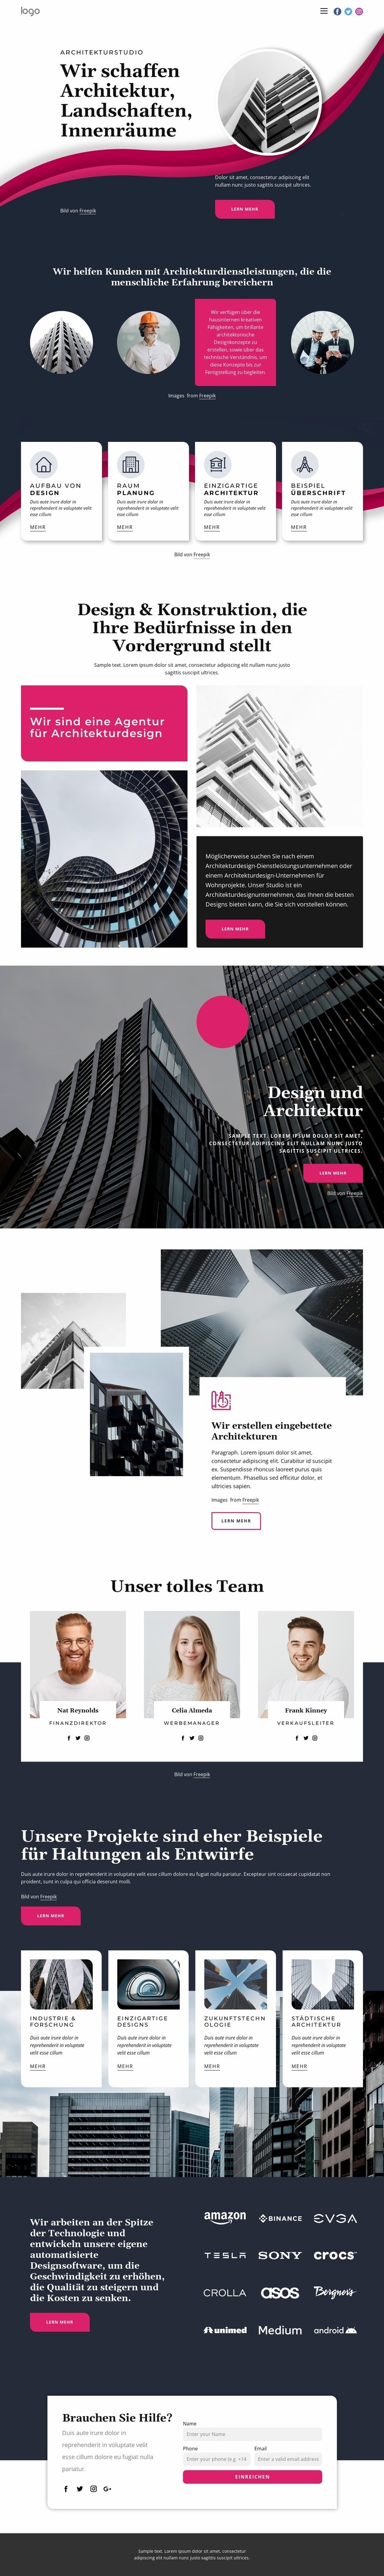 Wir schaffen großartige Architektur Website-Modell